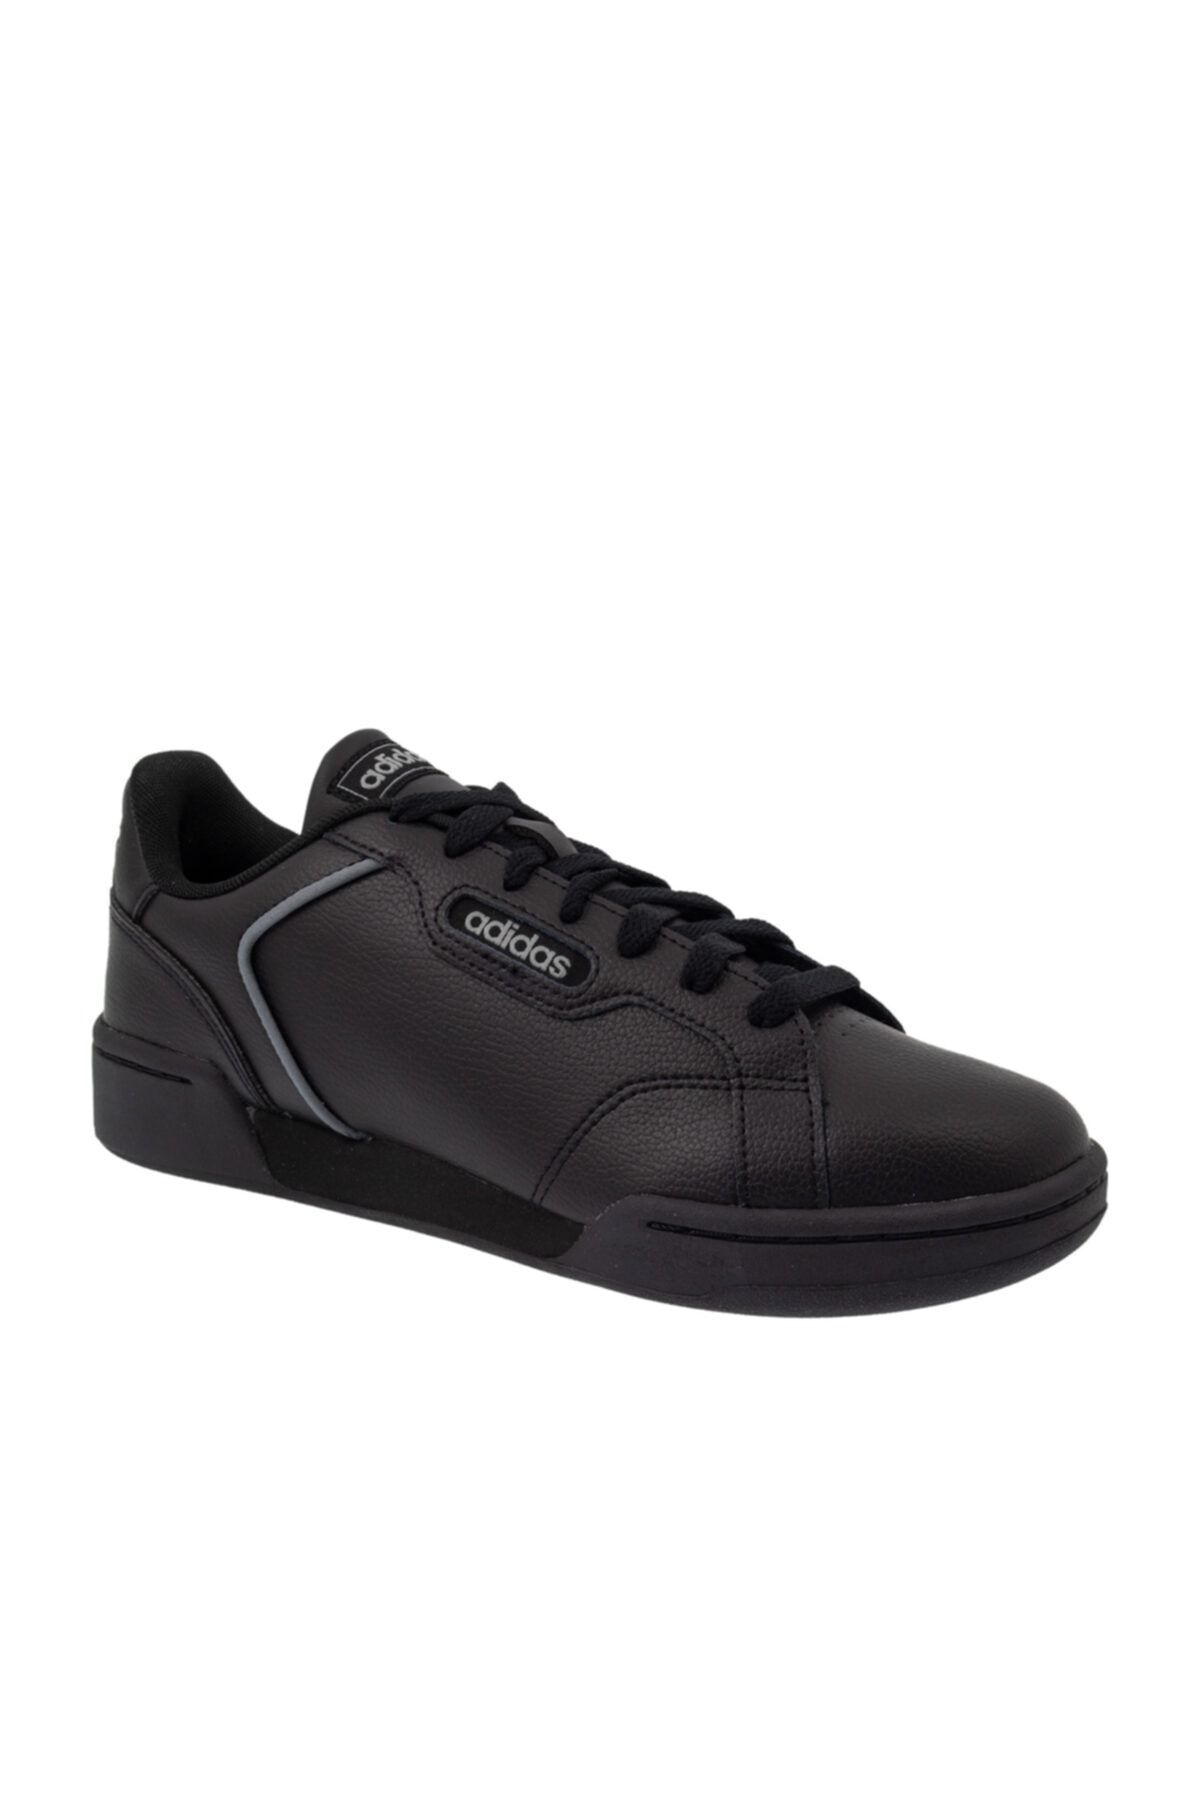 adidas Eg2659 Roguera Erkek Yürüyüş Ayakkabı